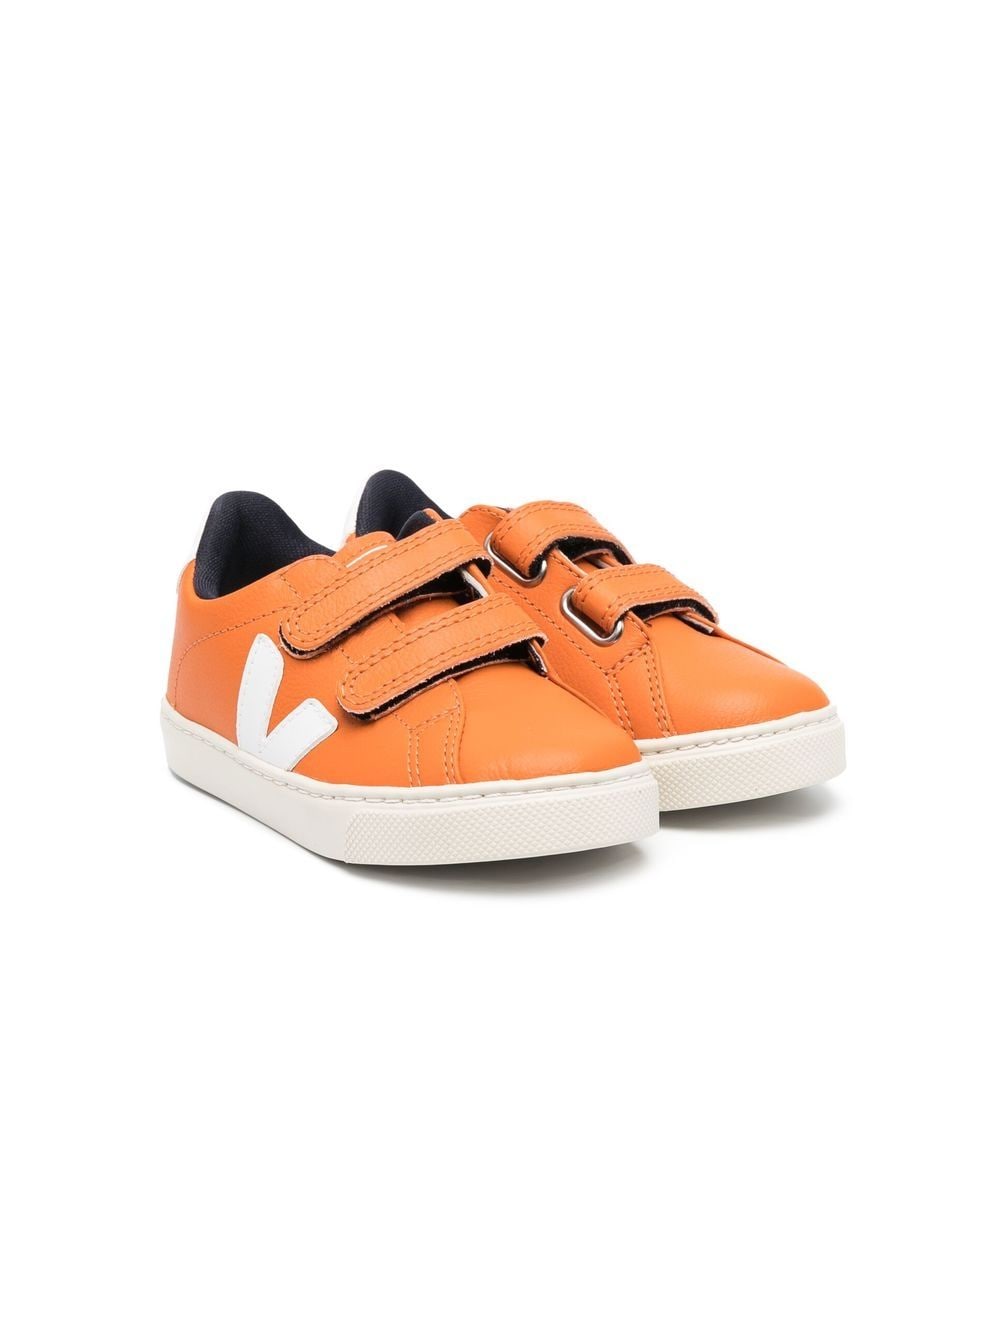 VEJA Kids Esplar Sneakers - Orange von VEJA Kids